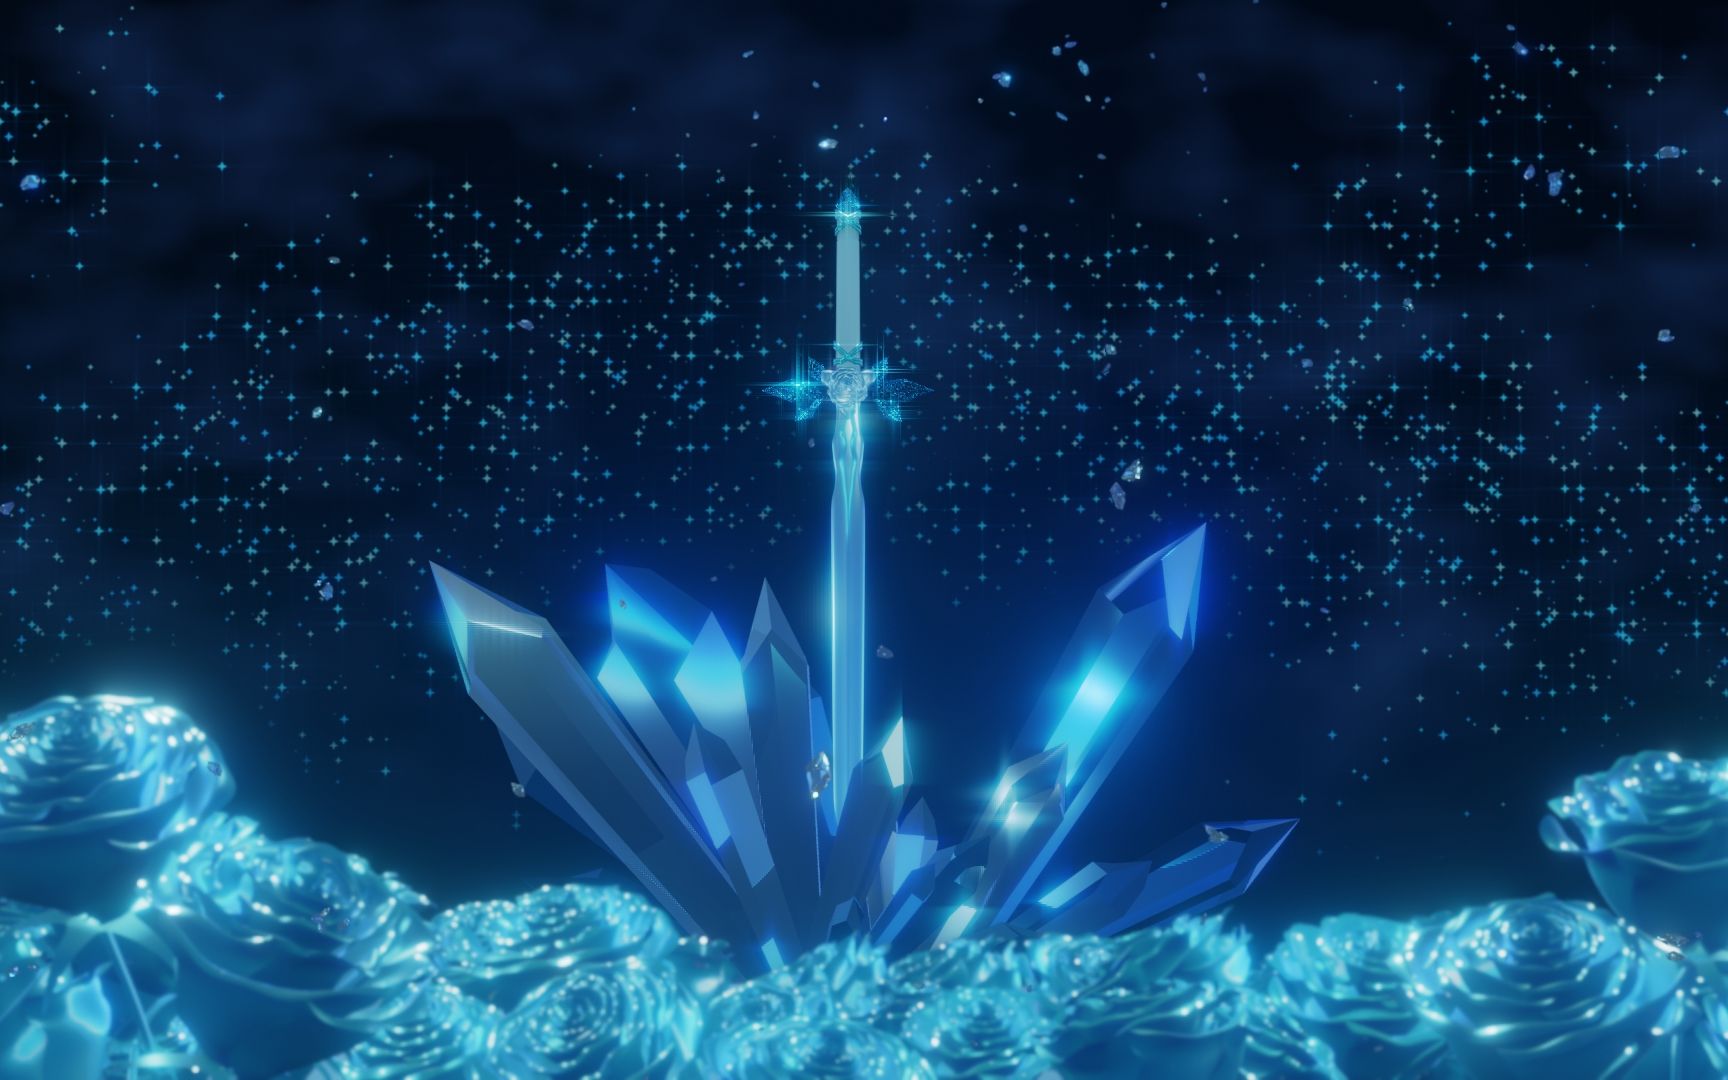 【刀剑神域】蓝蔷薇之剑动态壁纸